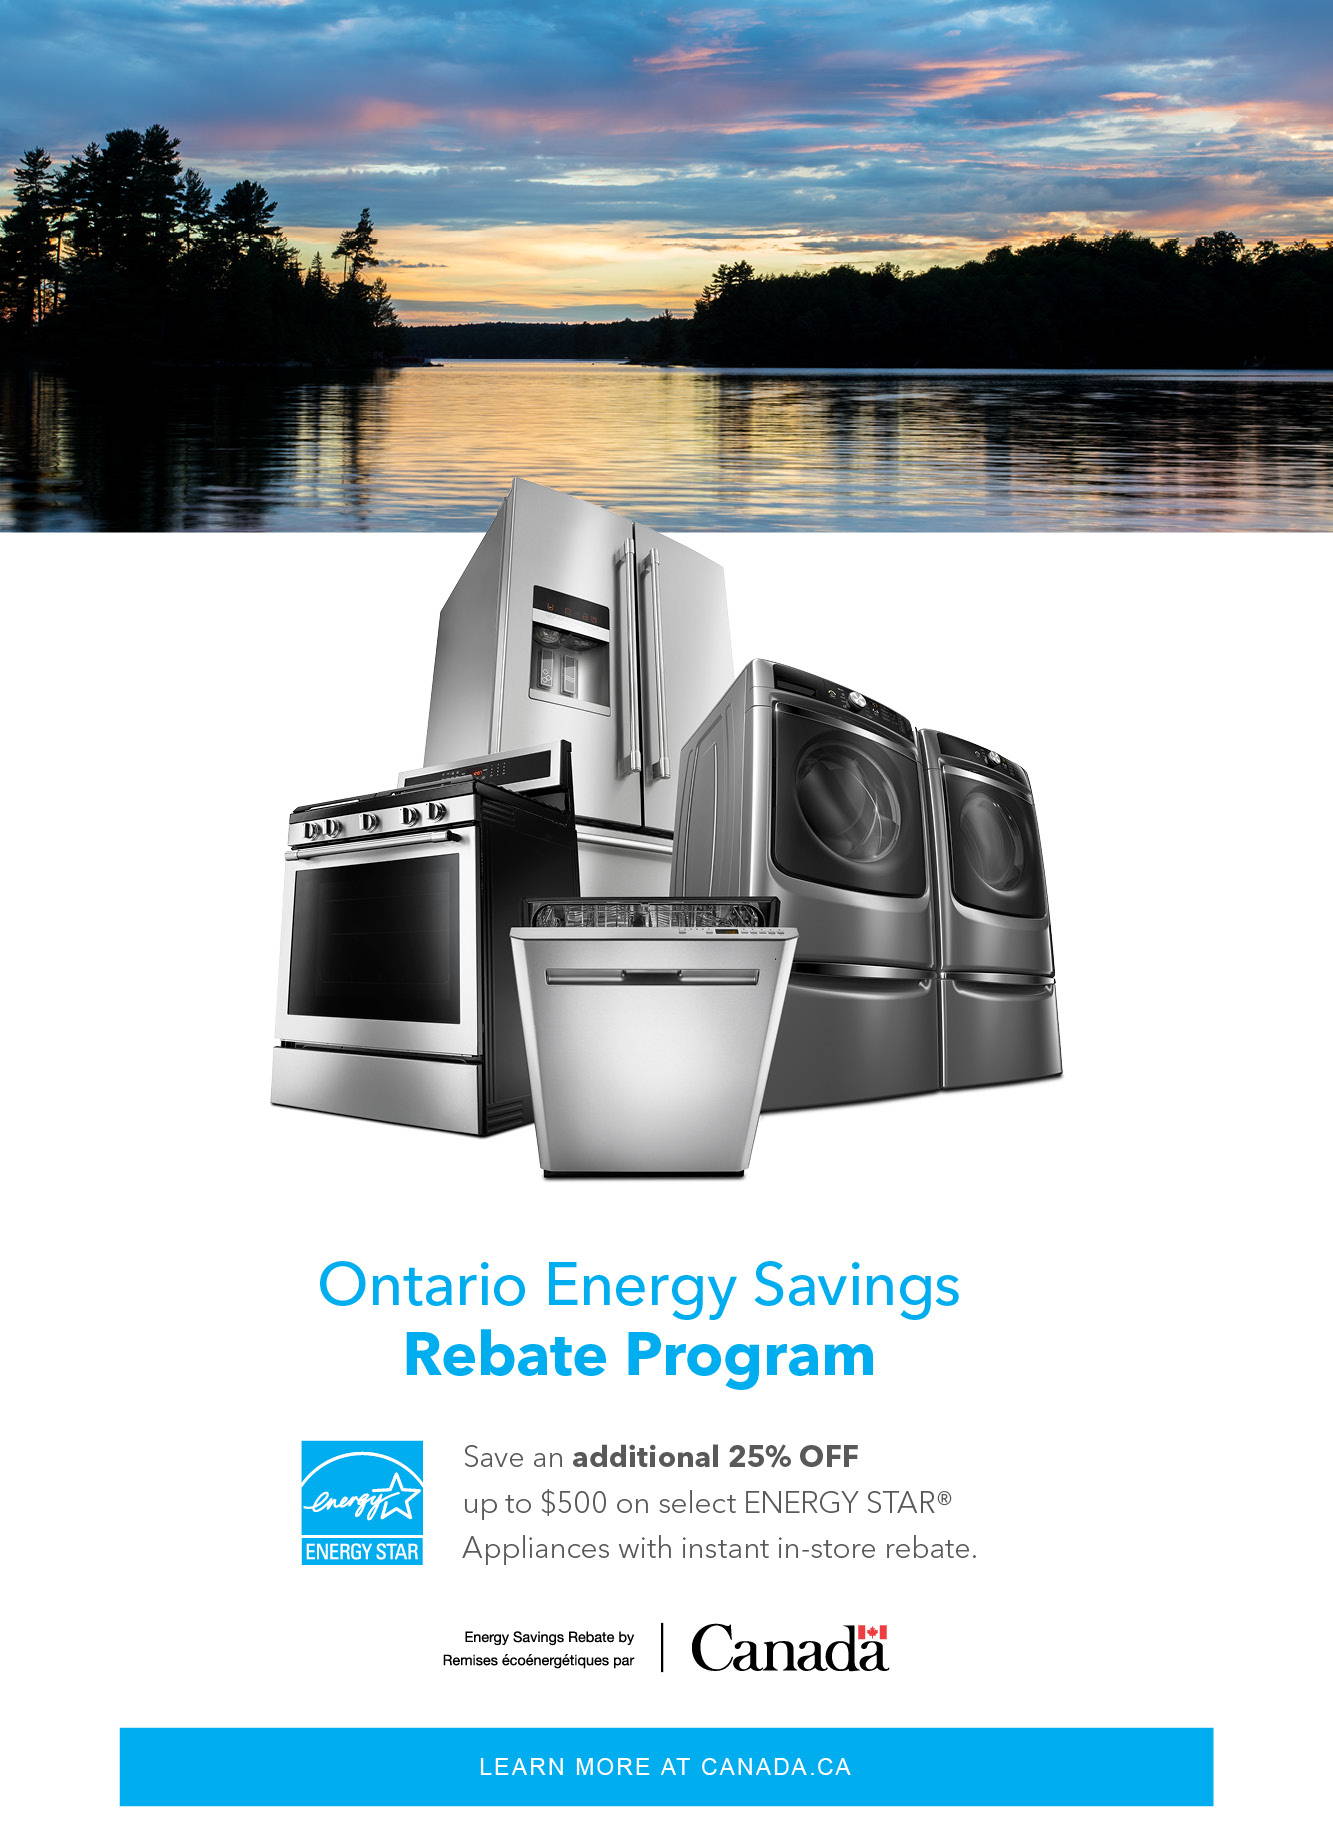 Ontario Energy Saving Program